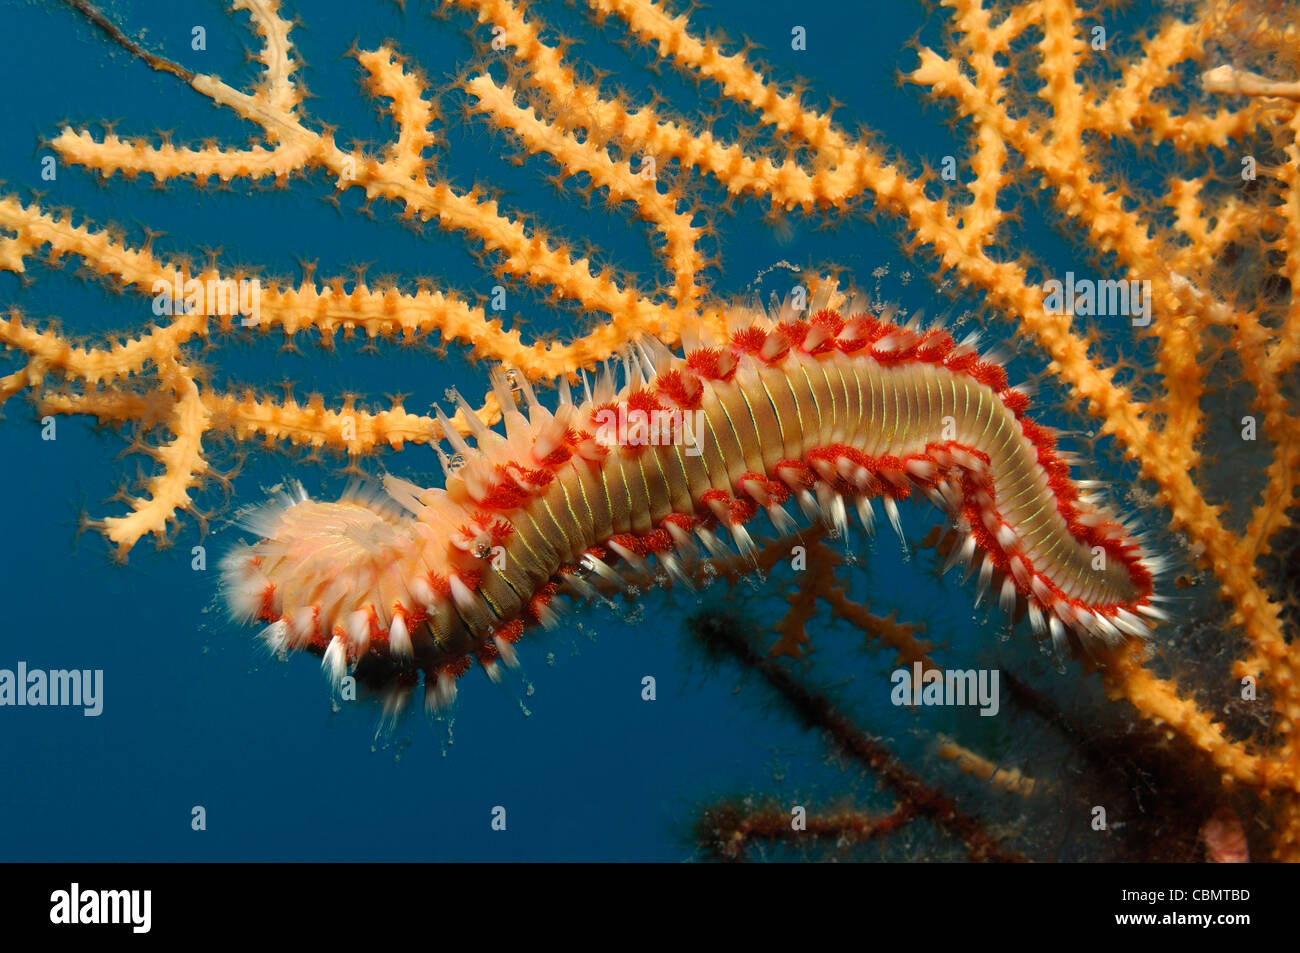 Fire Bristle Worm on Coral, Hermodice carunculata, Korcula Island, Adriatic Sea, Croatia Stock Photo